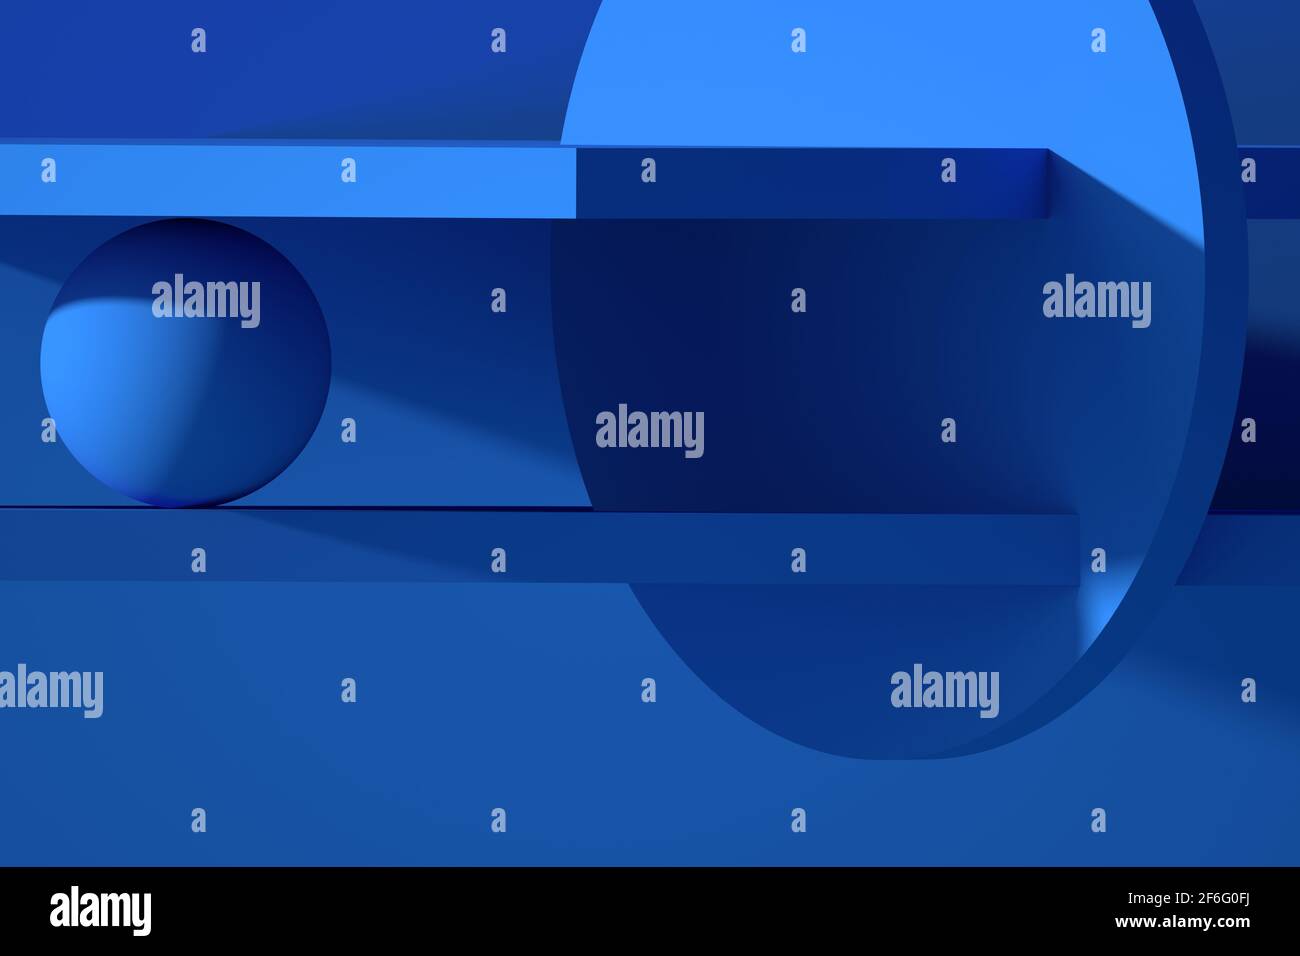 Bleu abstrait installation minimale de formes géométriques, illustration de rendu 3d Banque D'Images